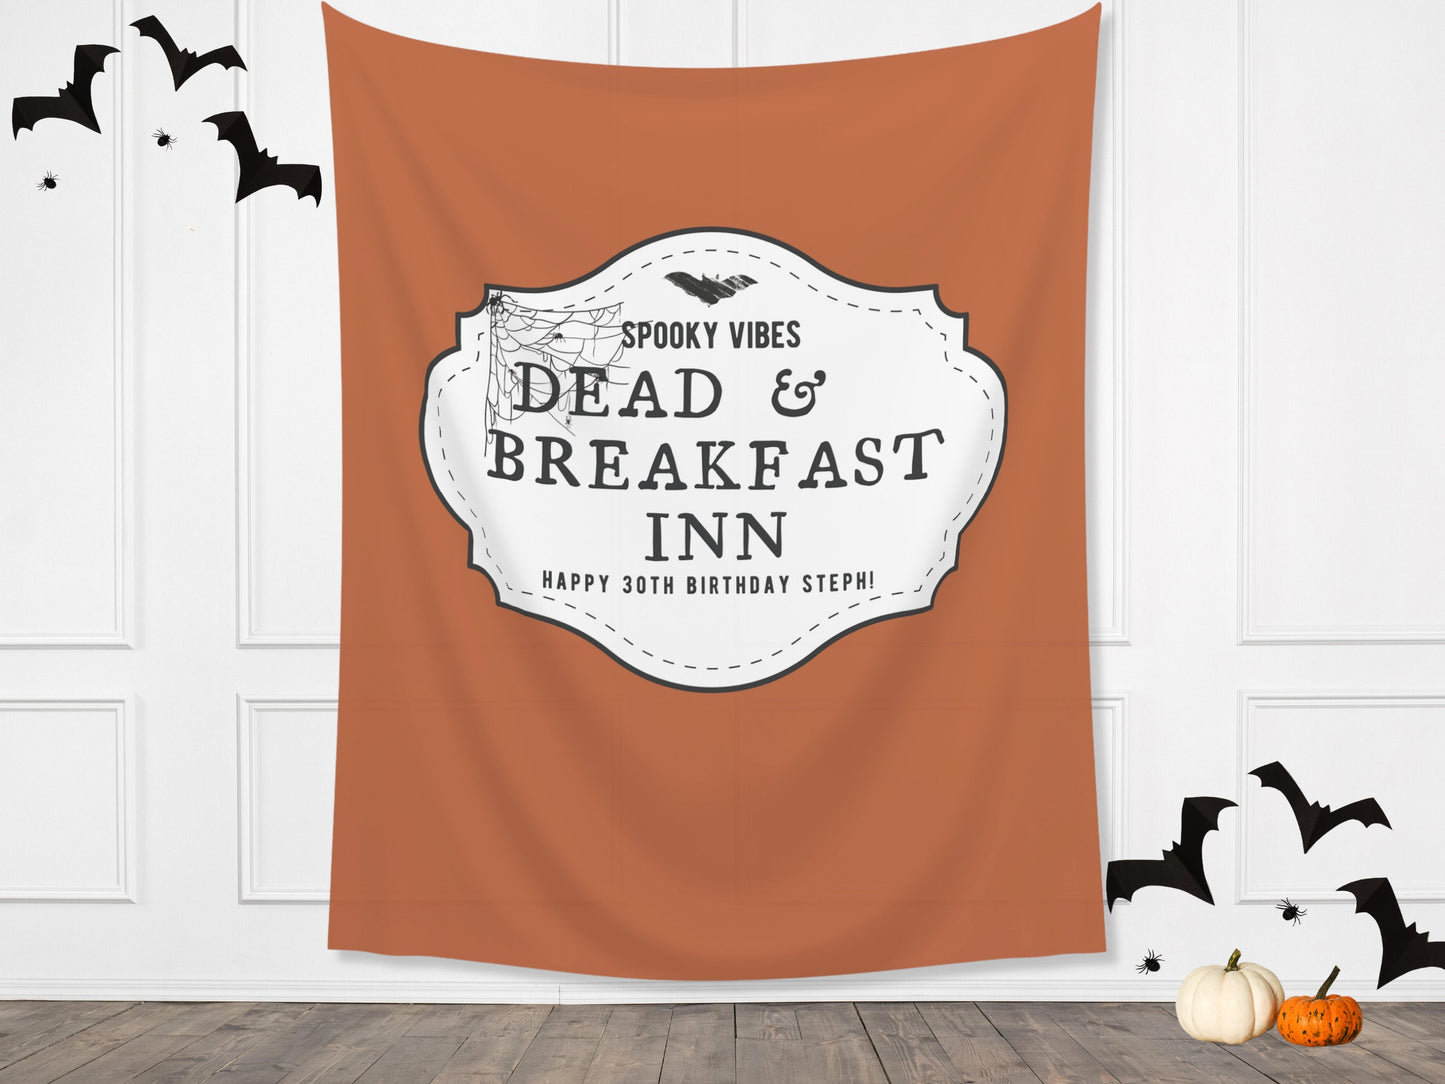 Spooky Dead & Breakfast Inn Custom Name Banner | Customizable Text Halloween Party Backdrop | Birthday, Fall Festival, Business Shop Décor